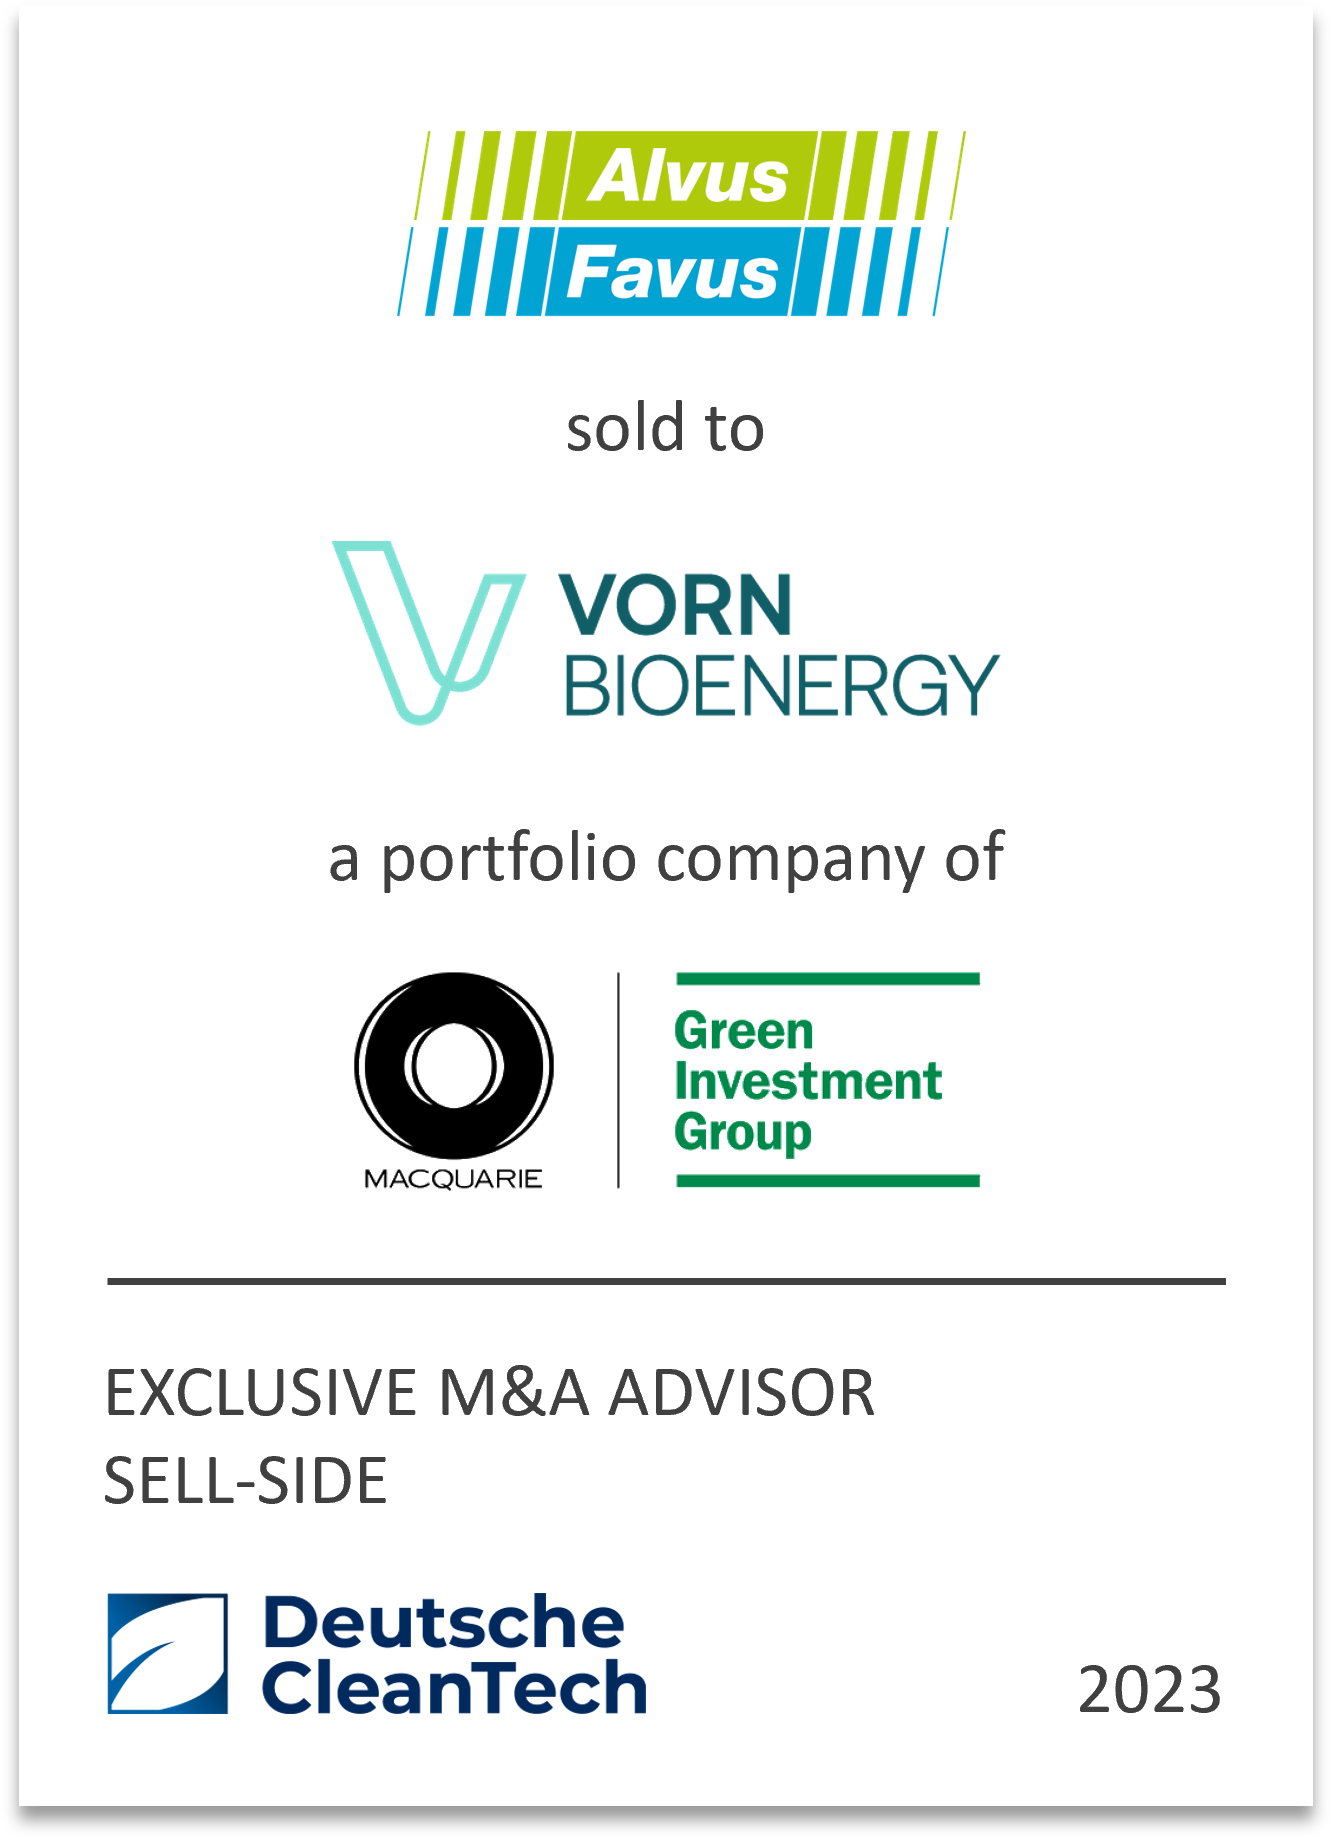 VORN Bioenergy GmbH aquires 100% of the shares in Alvus S.r.l. und Favus S.r.l..